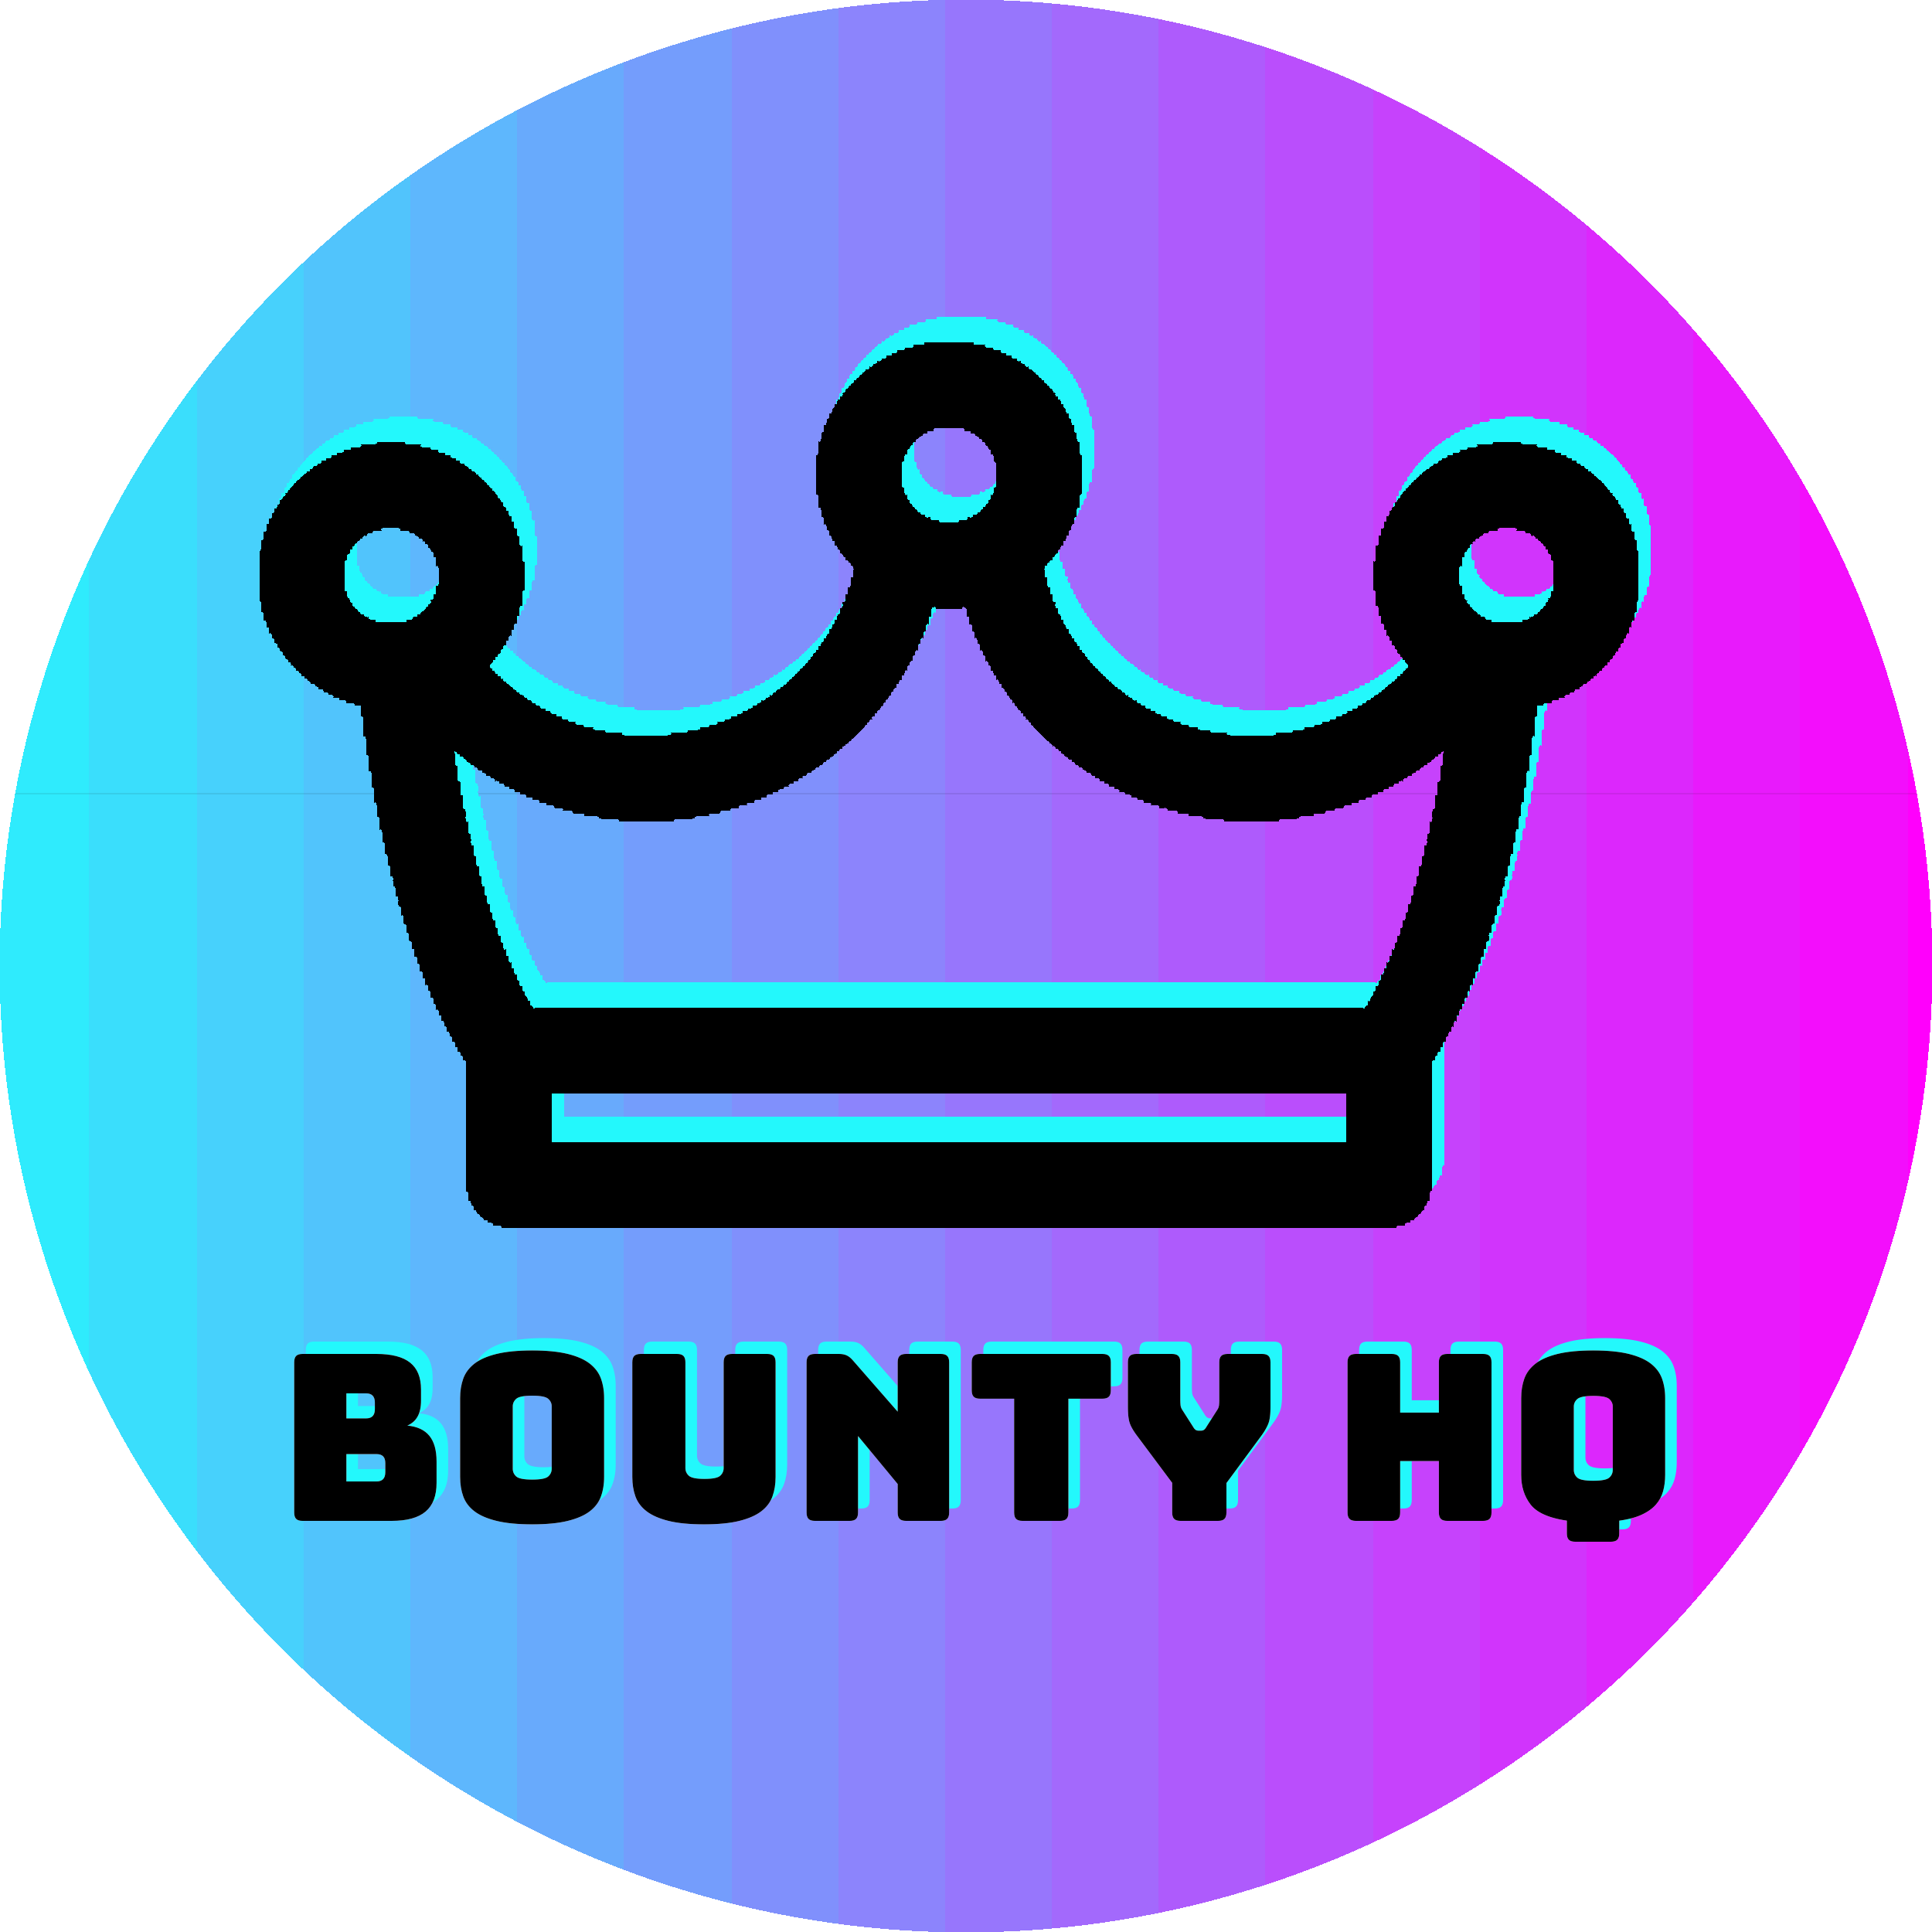 Bounty HQ